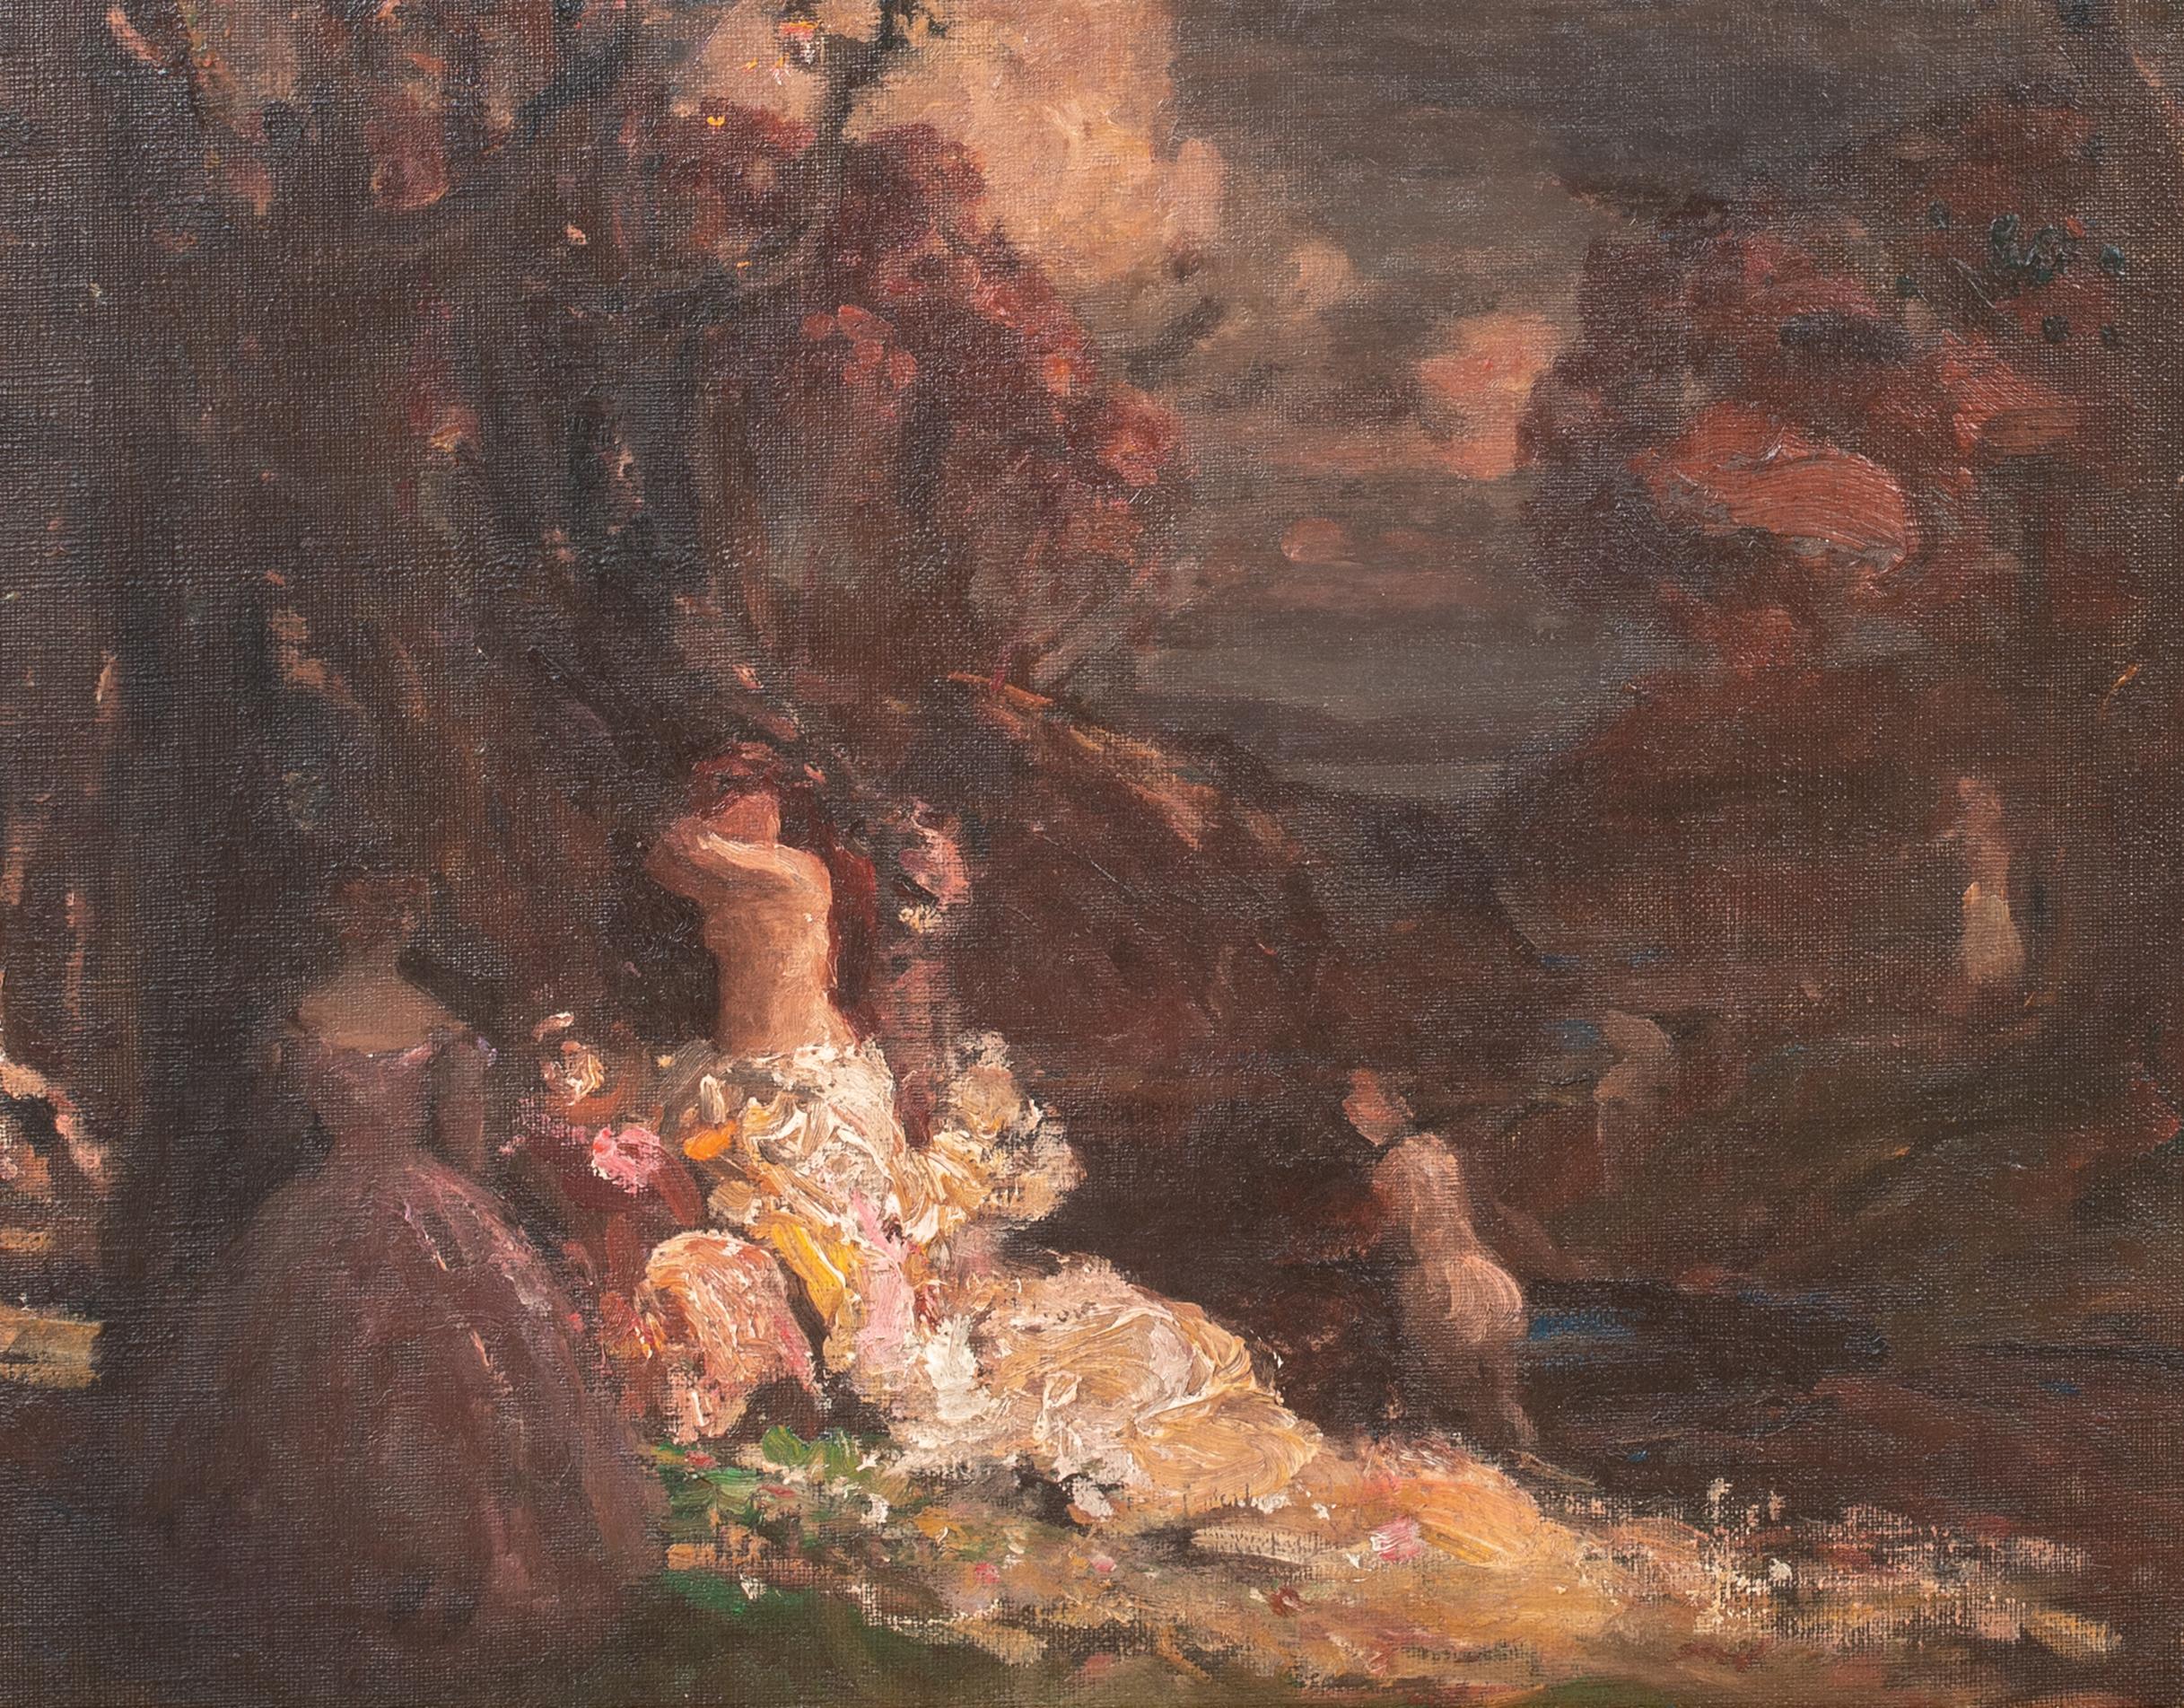 Femme dan les sous-bois, 19. Jahrhundert

Adolphe MONTICELLI (1824-1886) zugeschrieben

Große 19. Jahrhundert Französisch impressionistischen Waldszene von nackten Frauen, Öl auf Leinwand Adolphe Monticelli. Ausgezeichnete Qualität und Zustand,